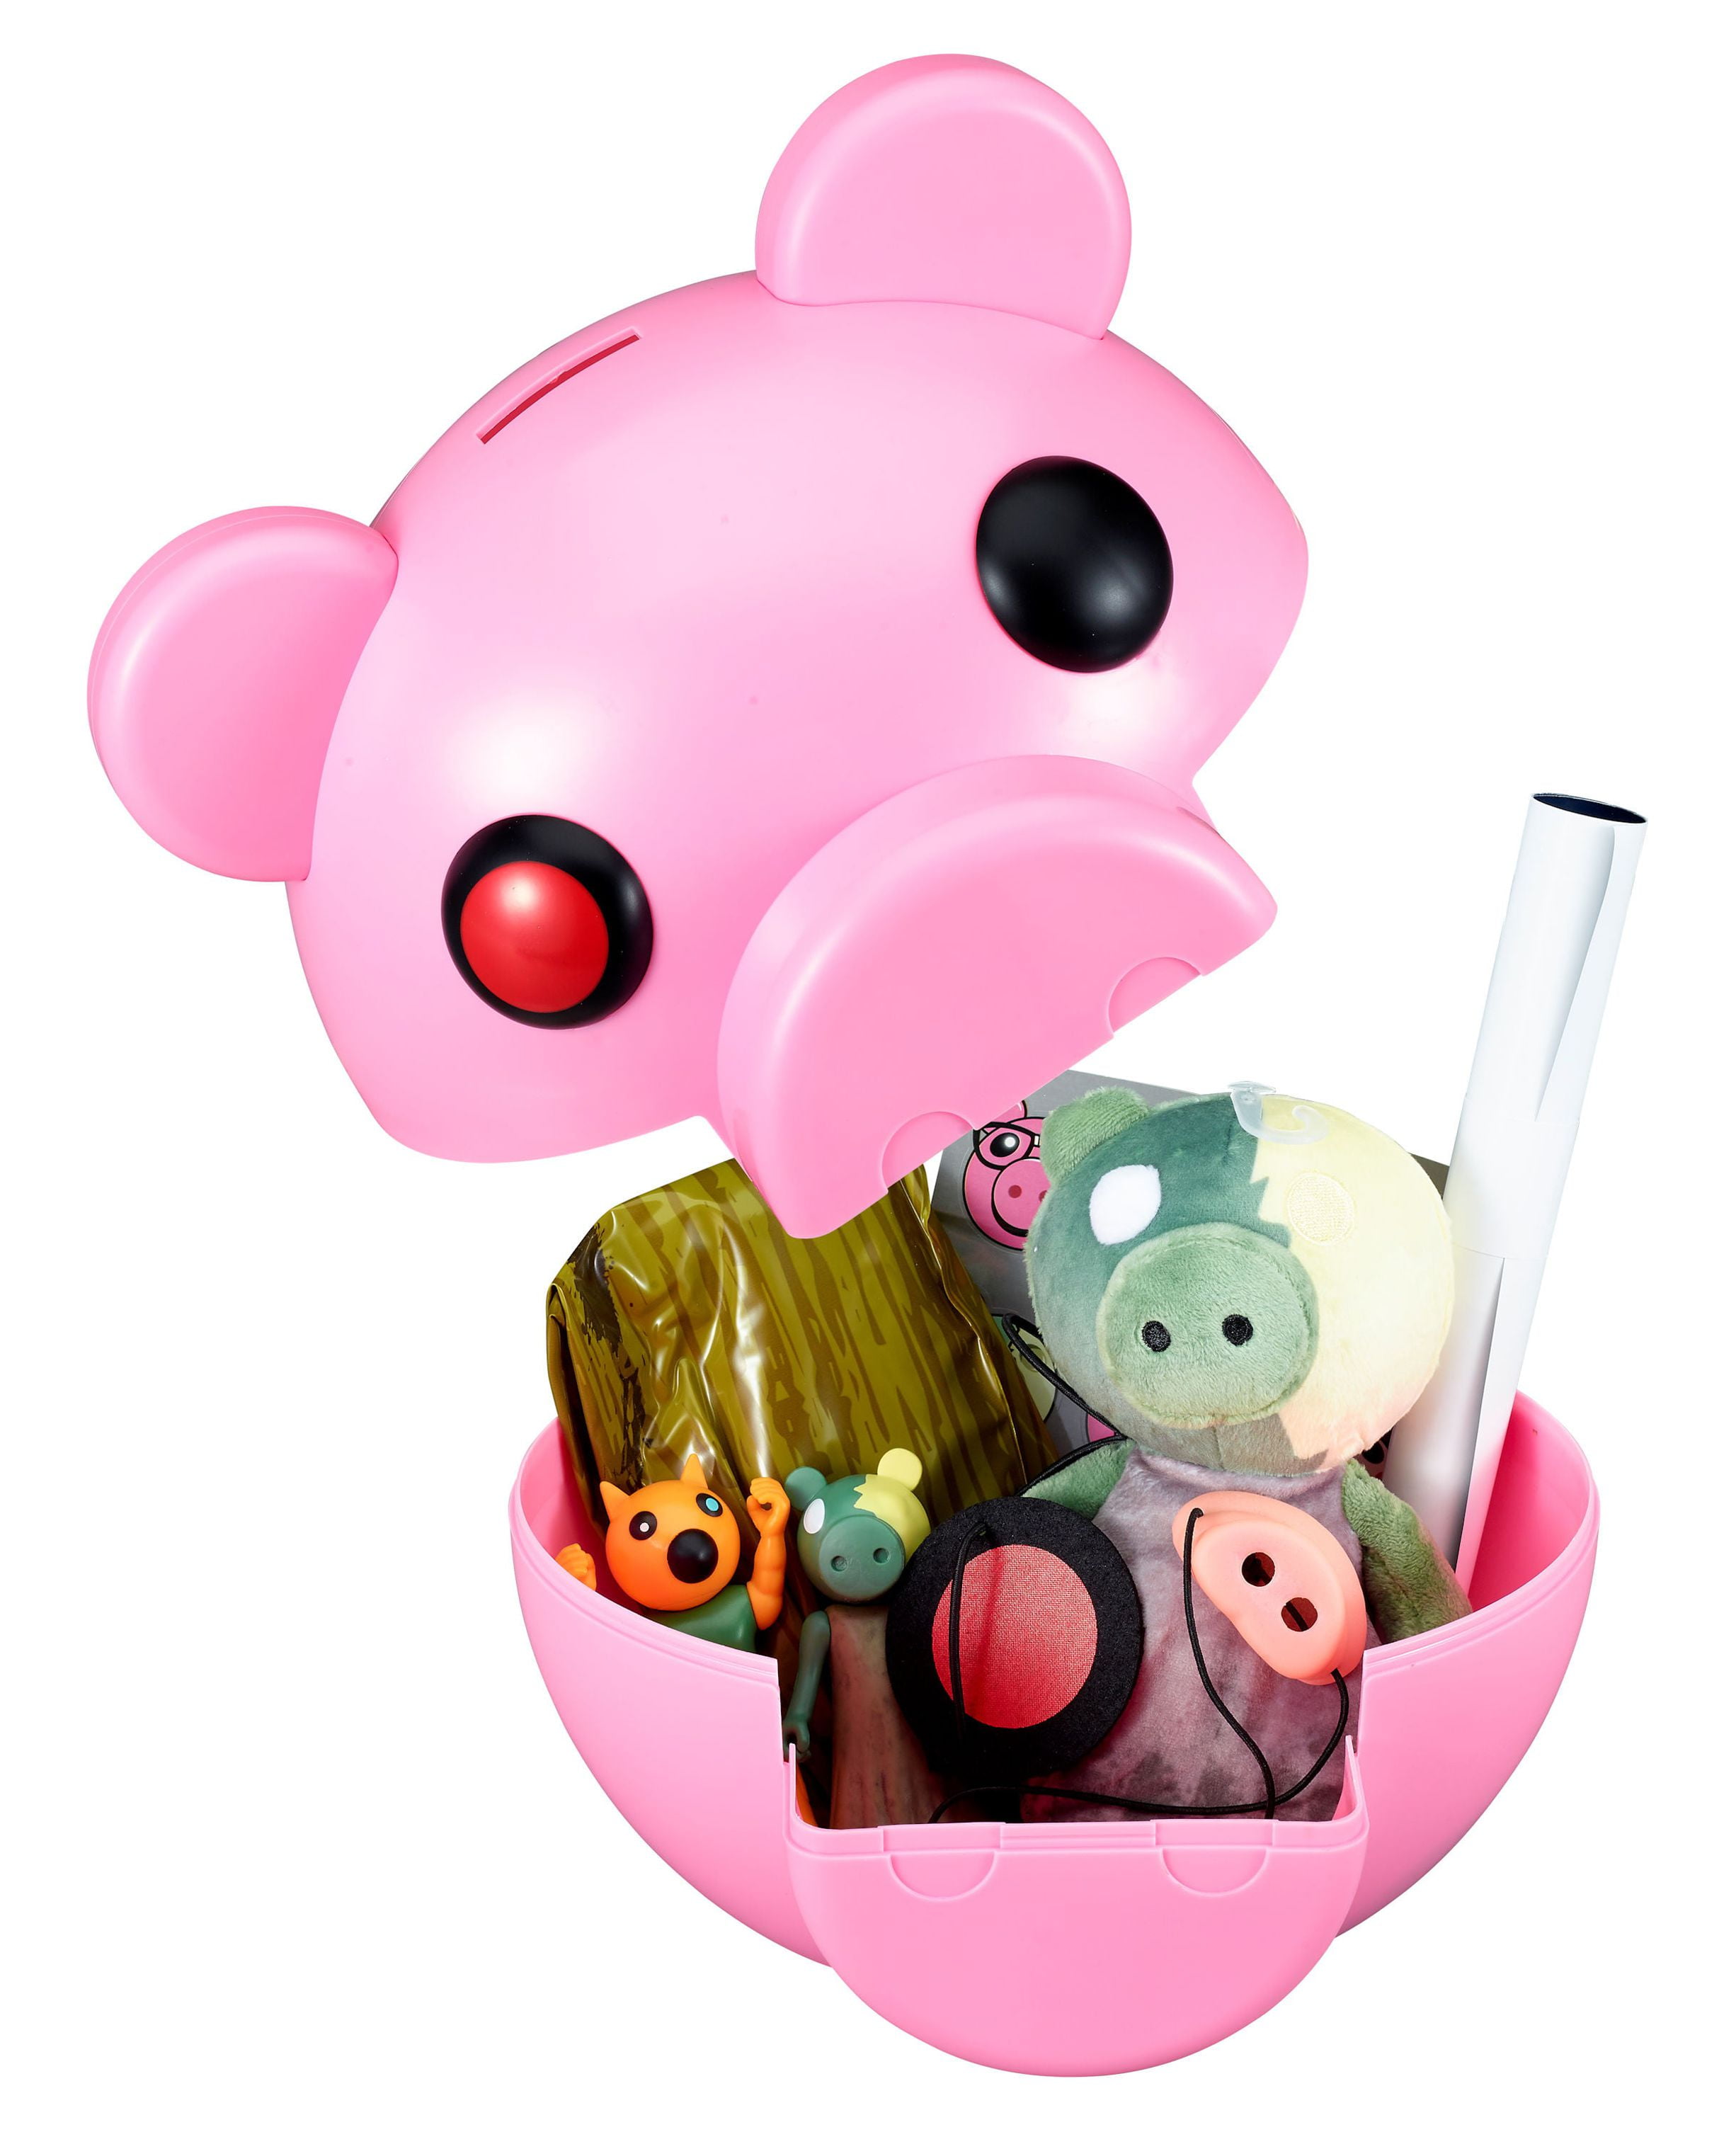 PIGGY - Piggy Collectible Plush (8 Plush, Series 1) [Includes DLC